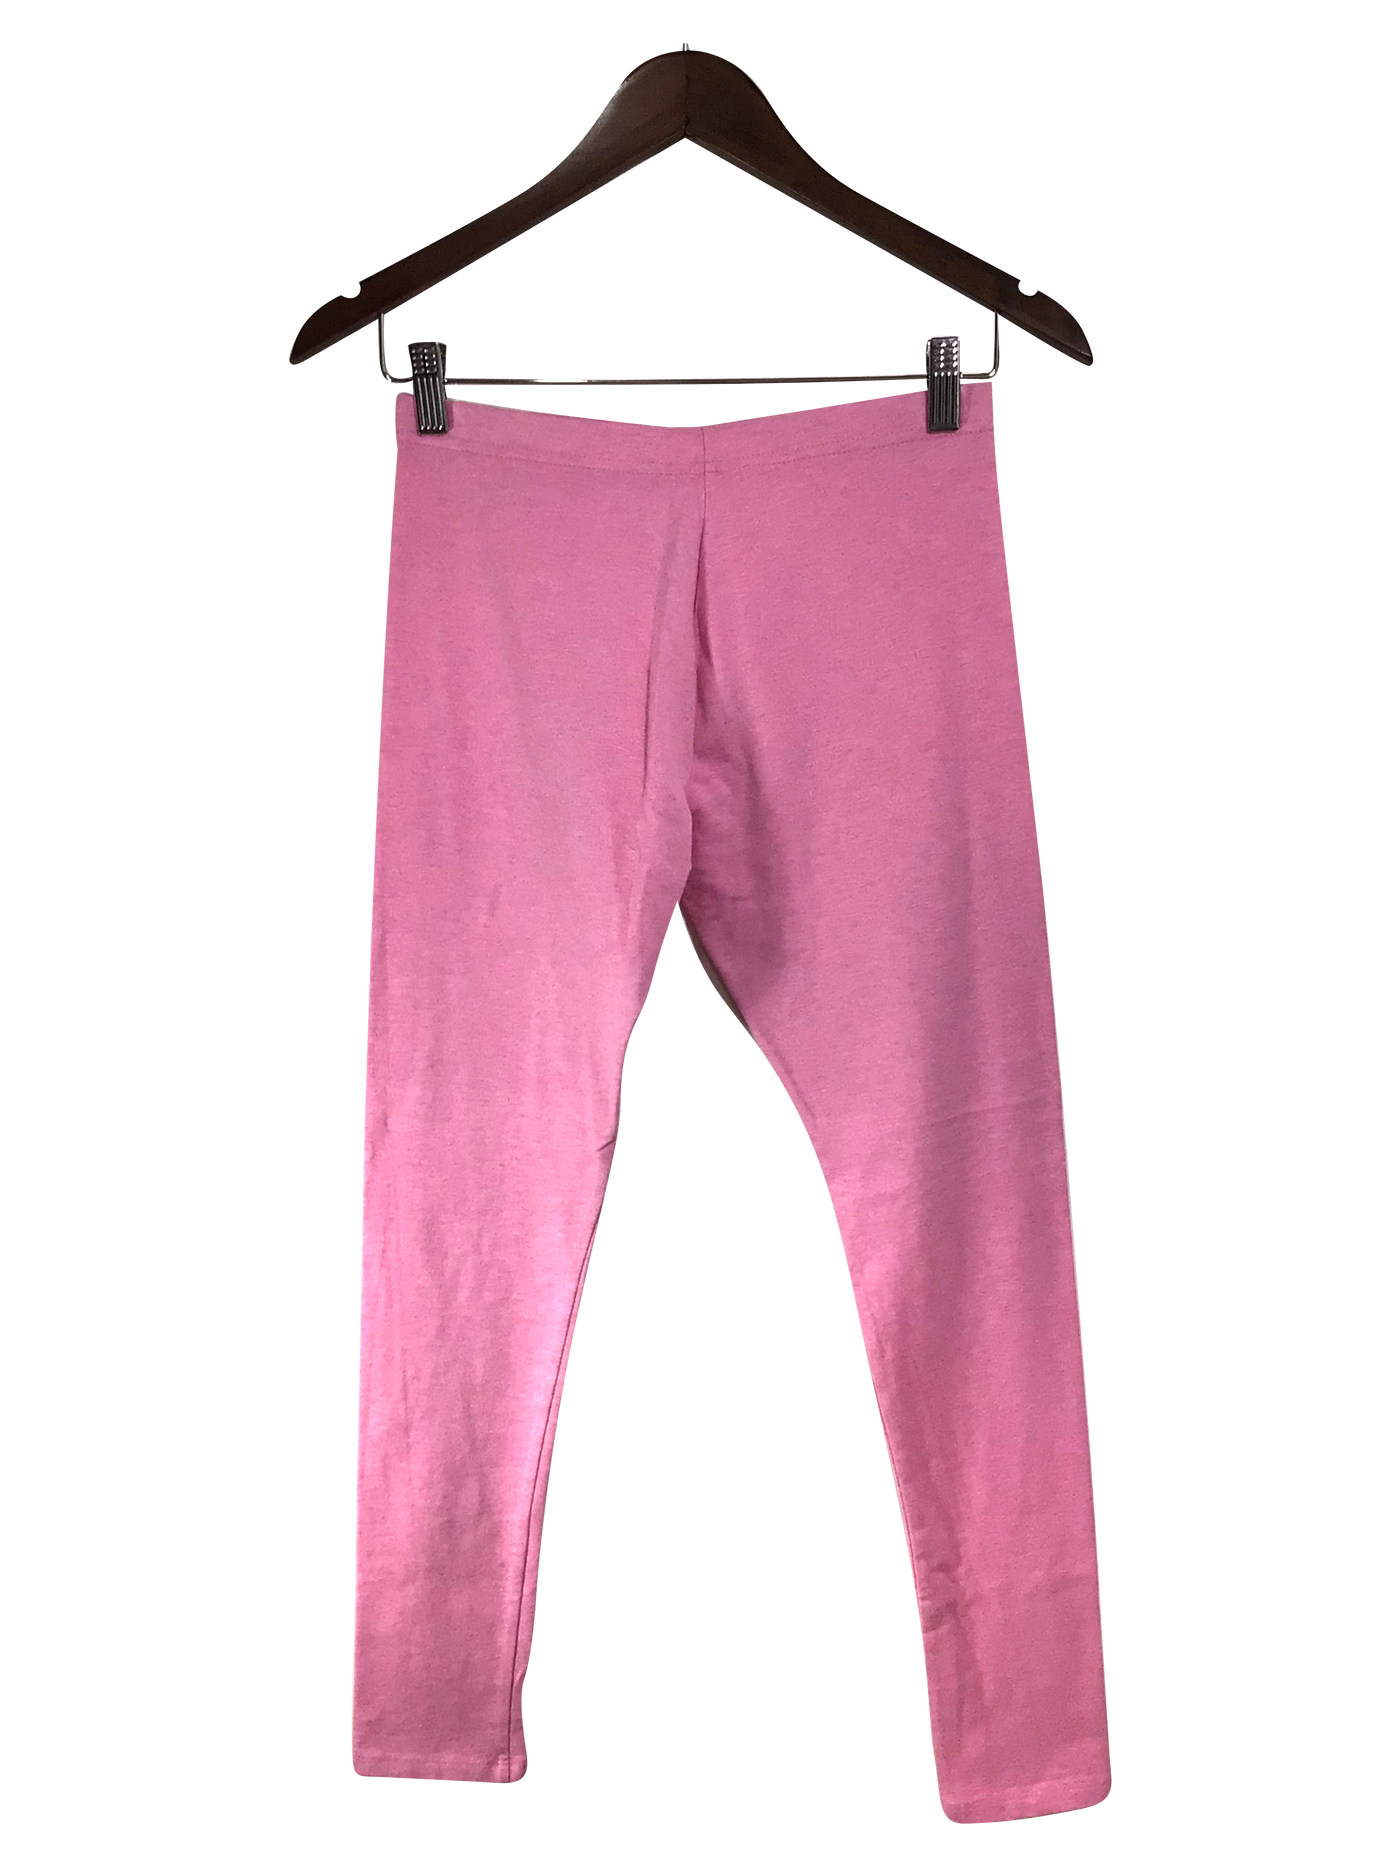 GEORGE Pant Regular fit in Pink - Size XL | 7.69 $ KOOP